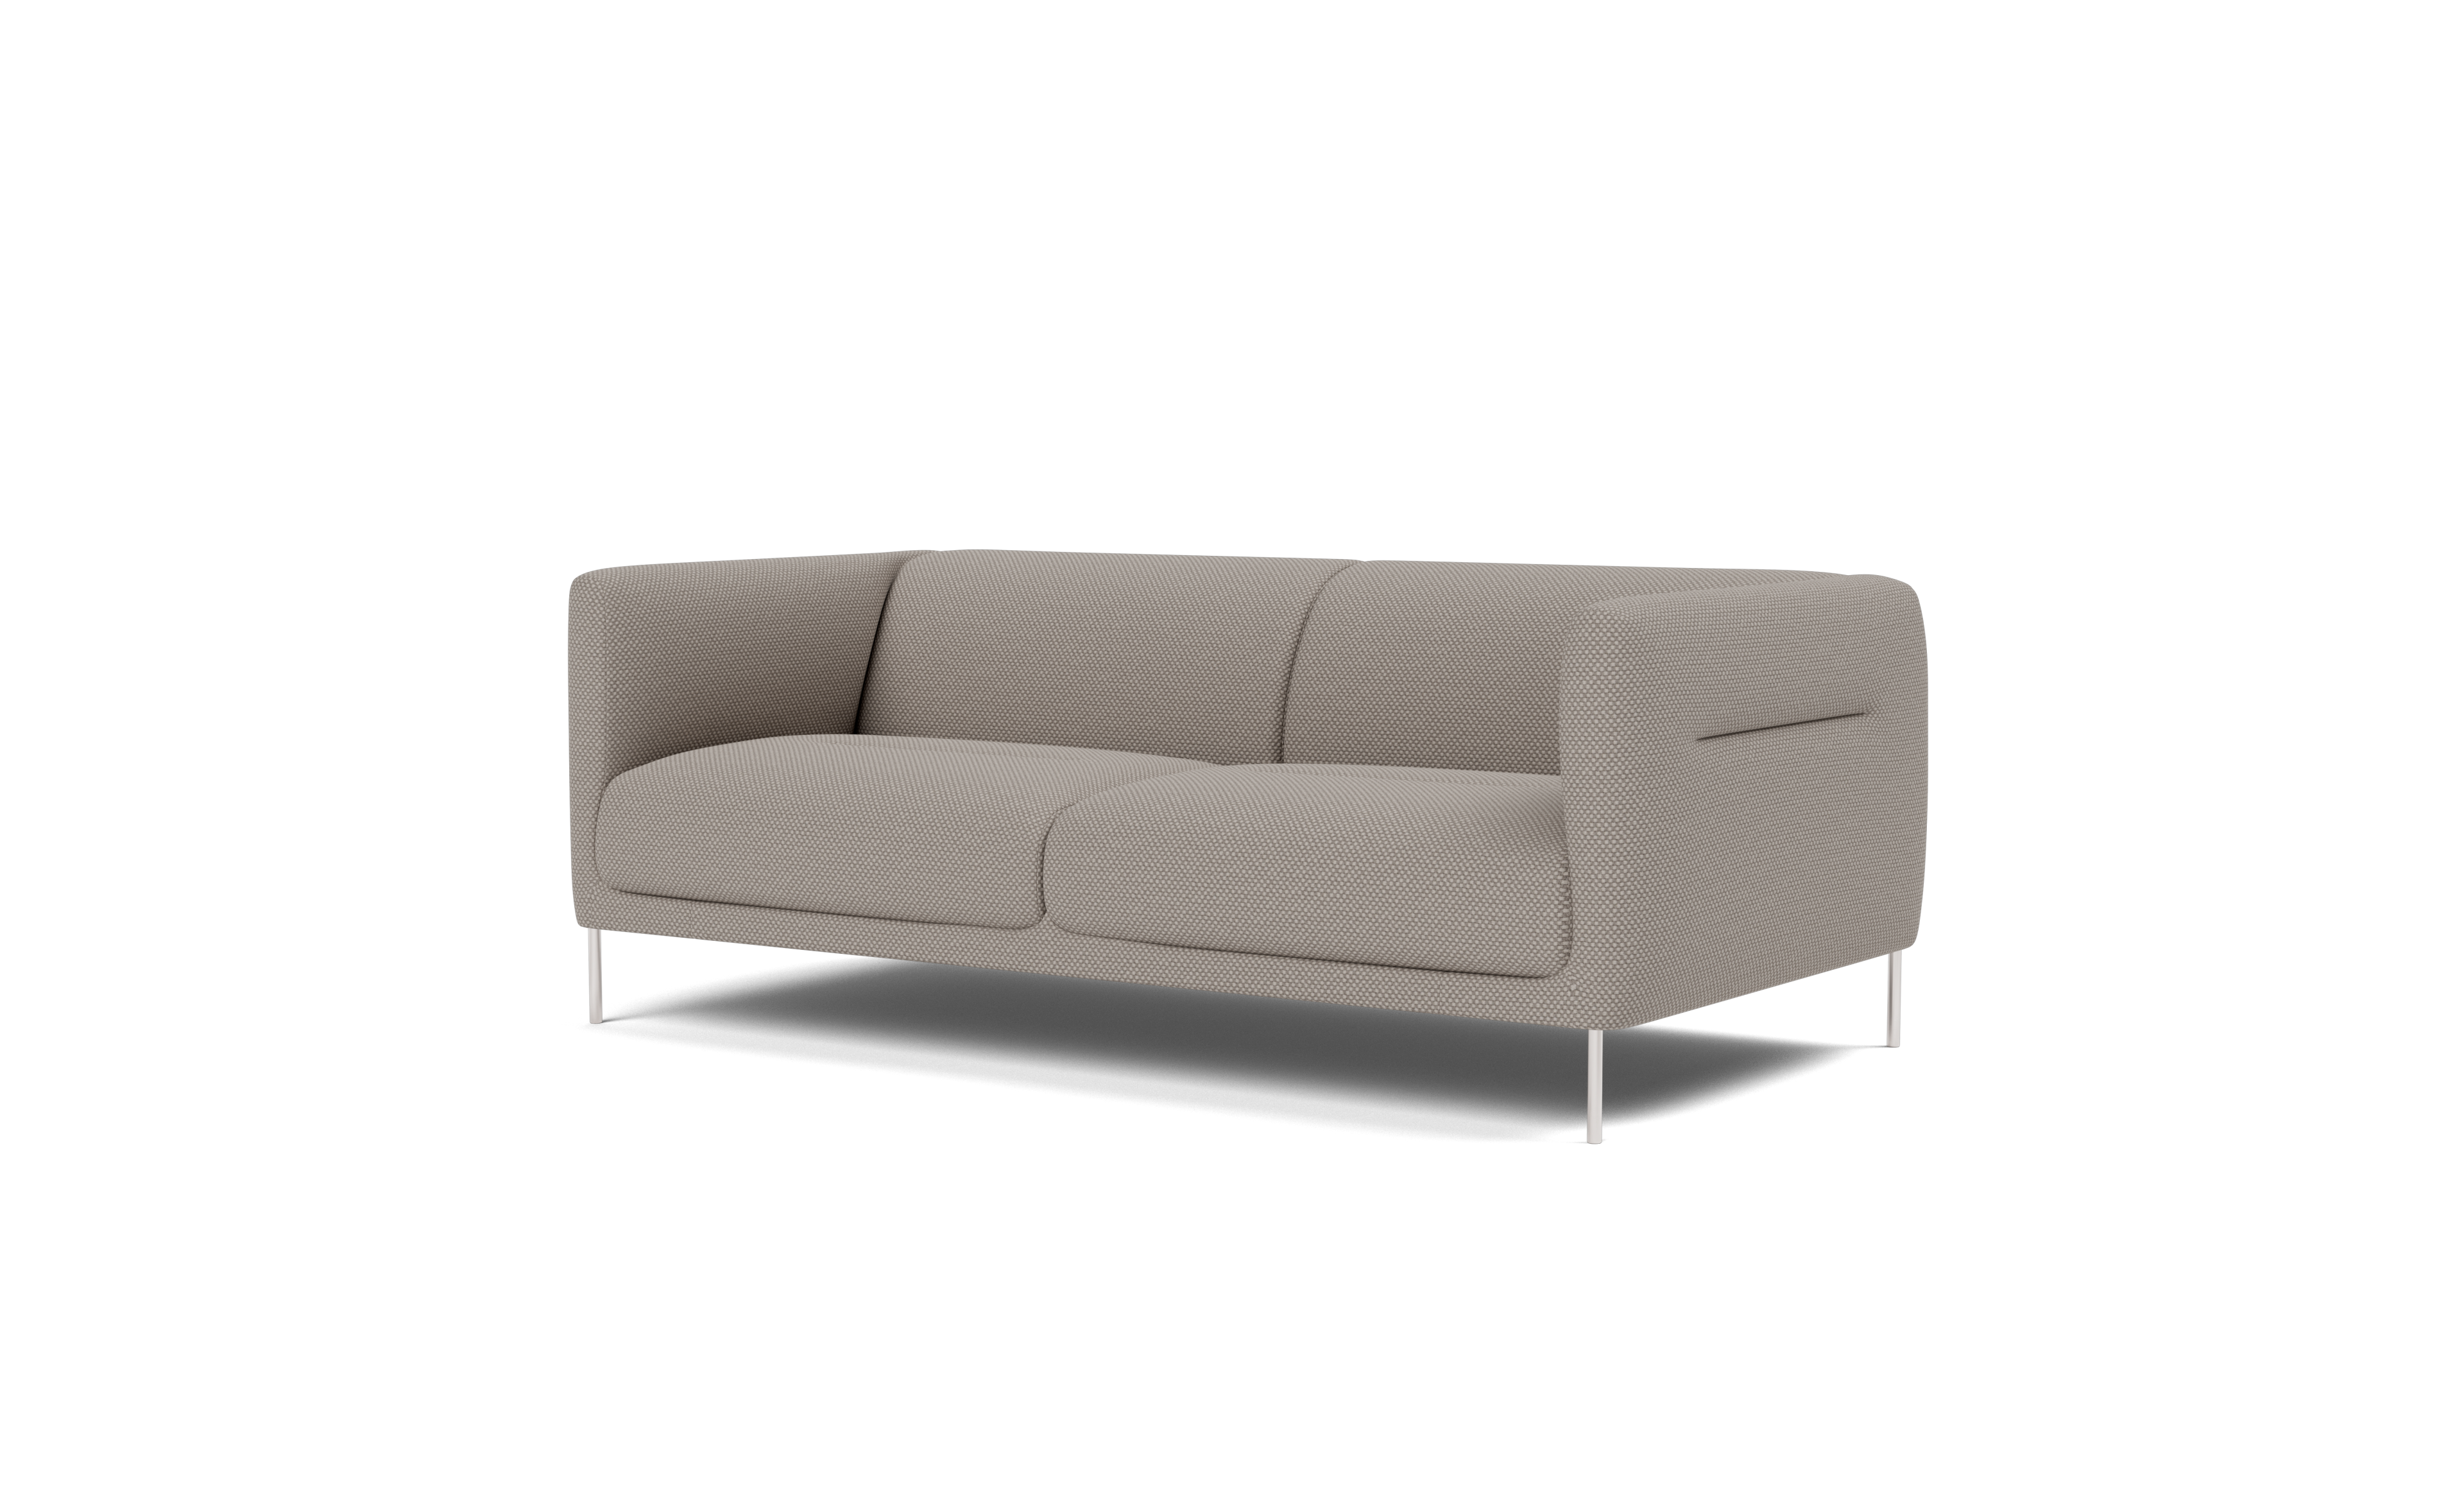 Damian Williamson - Konami Sofa, 2 seater